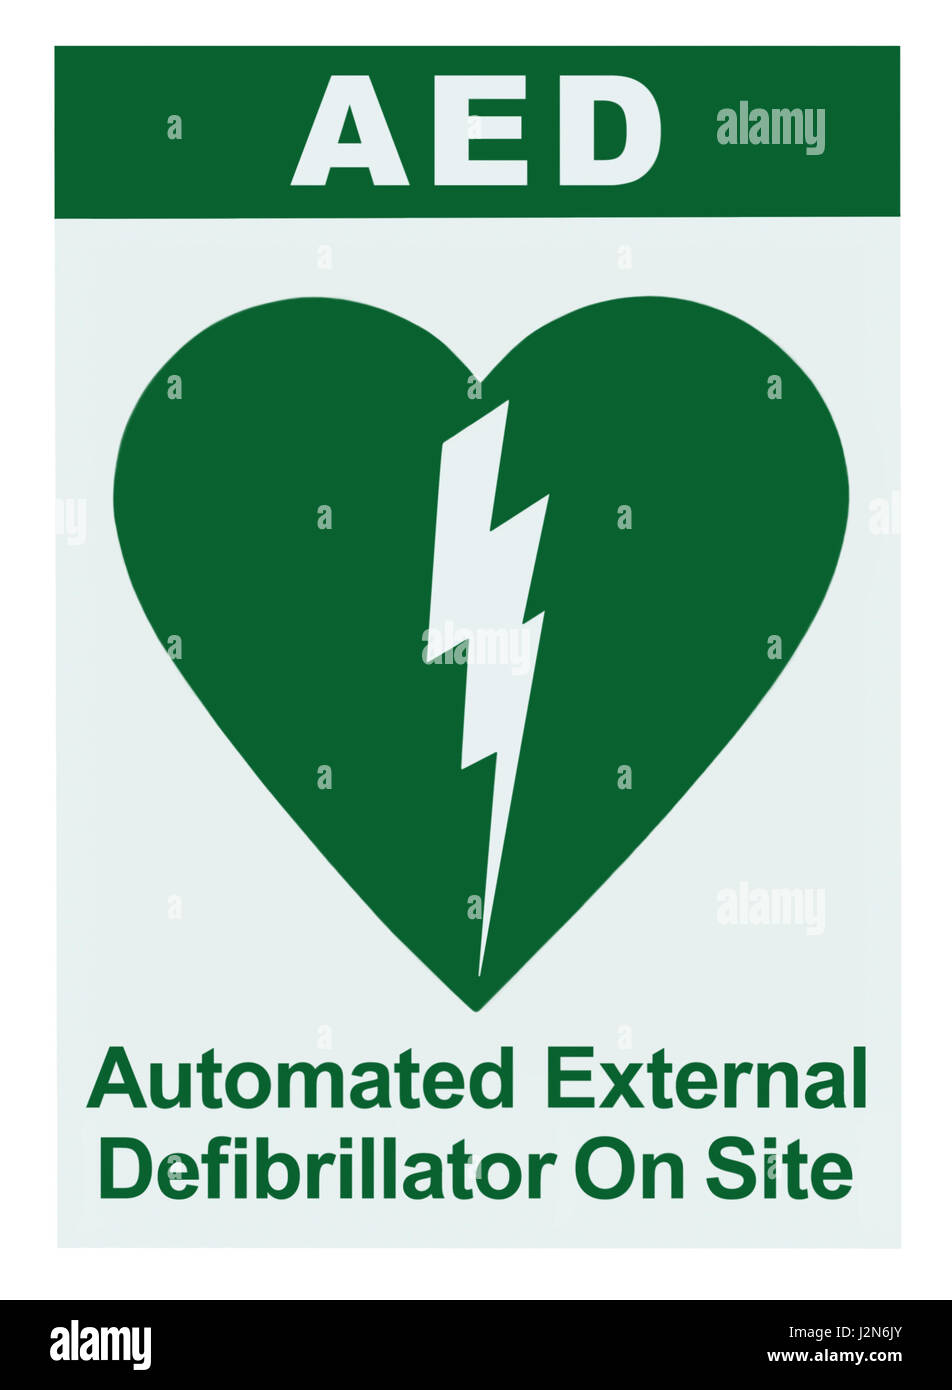 Défibrillateur Automatisé Externe AED sur place à l'intérieur du texte, l'icône verte, panneau blanc étiquette autocollant verticale isolée, la réanimation cardiorespiratoire Heart Banque D'Images